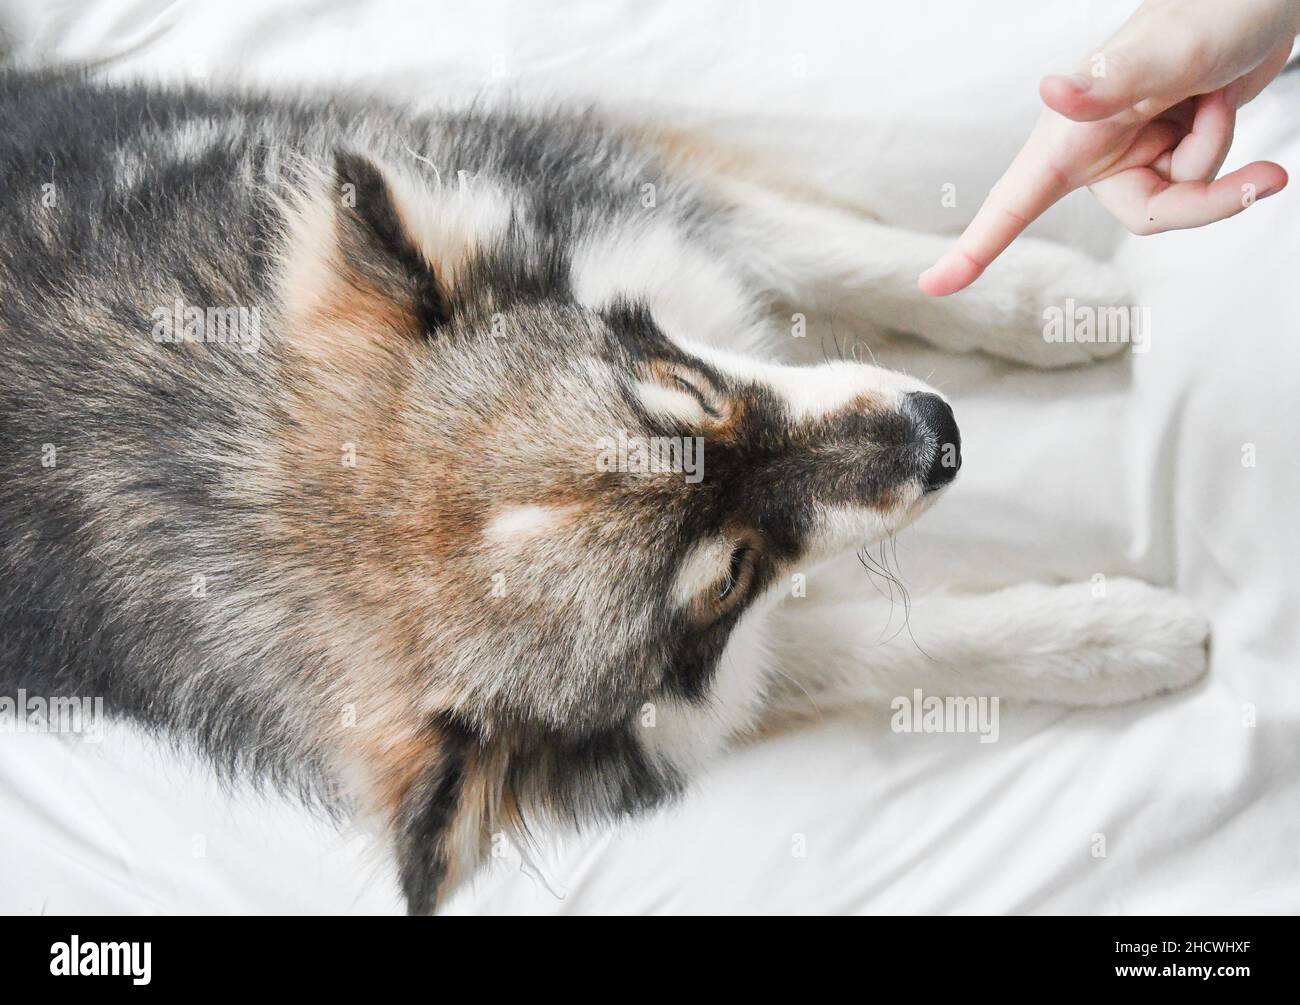 Porträt eines jungen finnischen Lapphund-Hundes in Innenräumen, der einen Trick namens Play Dead macht Stockfoto